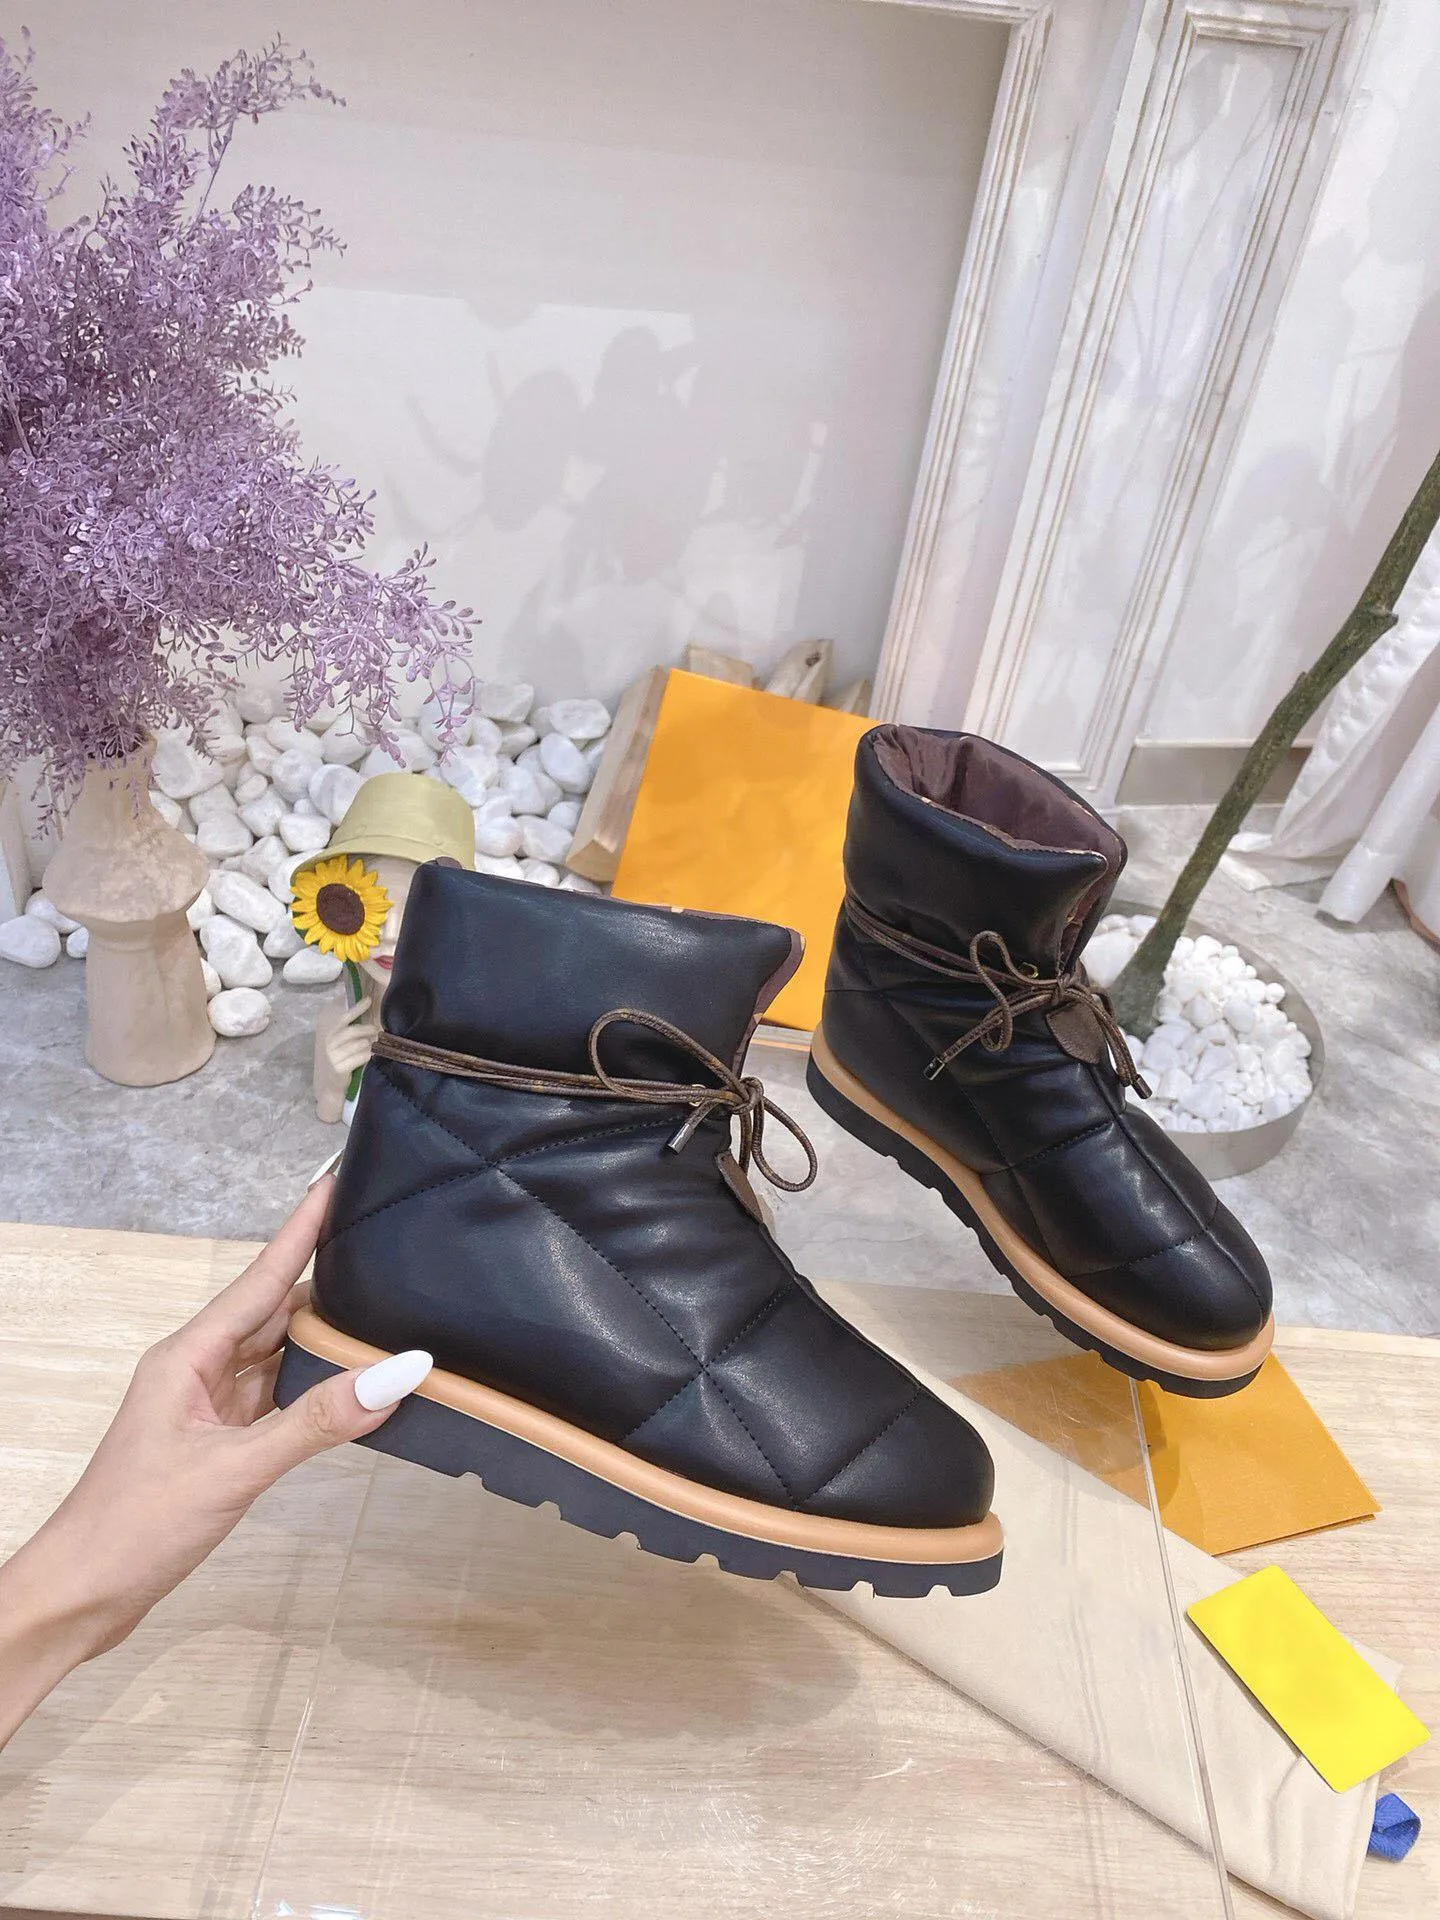 Luxus Women Boots Kissen Komfort Damen Lederschuhe Kn￶chelstiefel Winter f￼r Wanderarbeiten im Freien Sneaker Gr￶￟e 35-41 mit Kiste